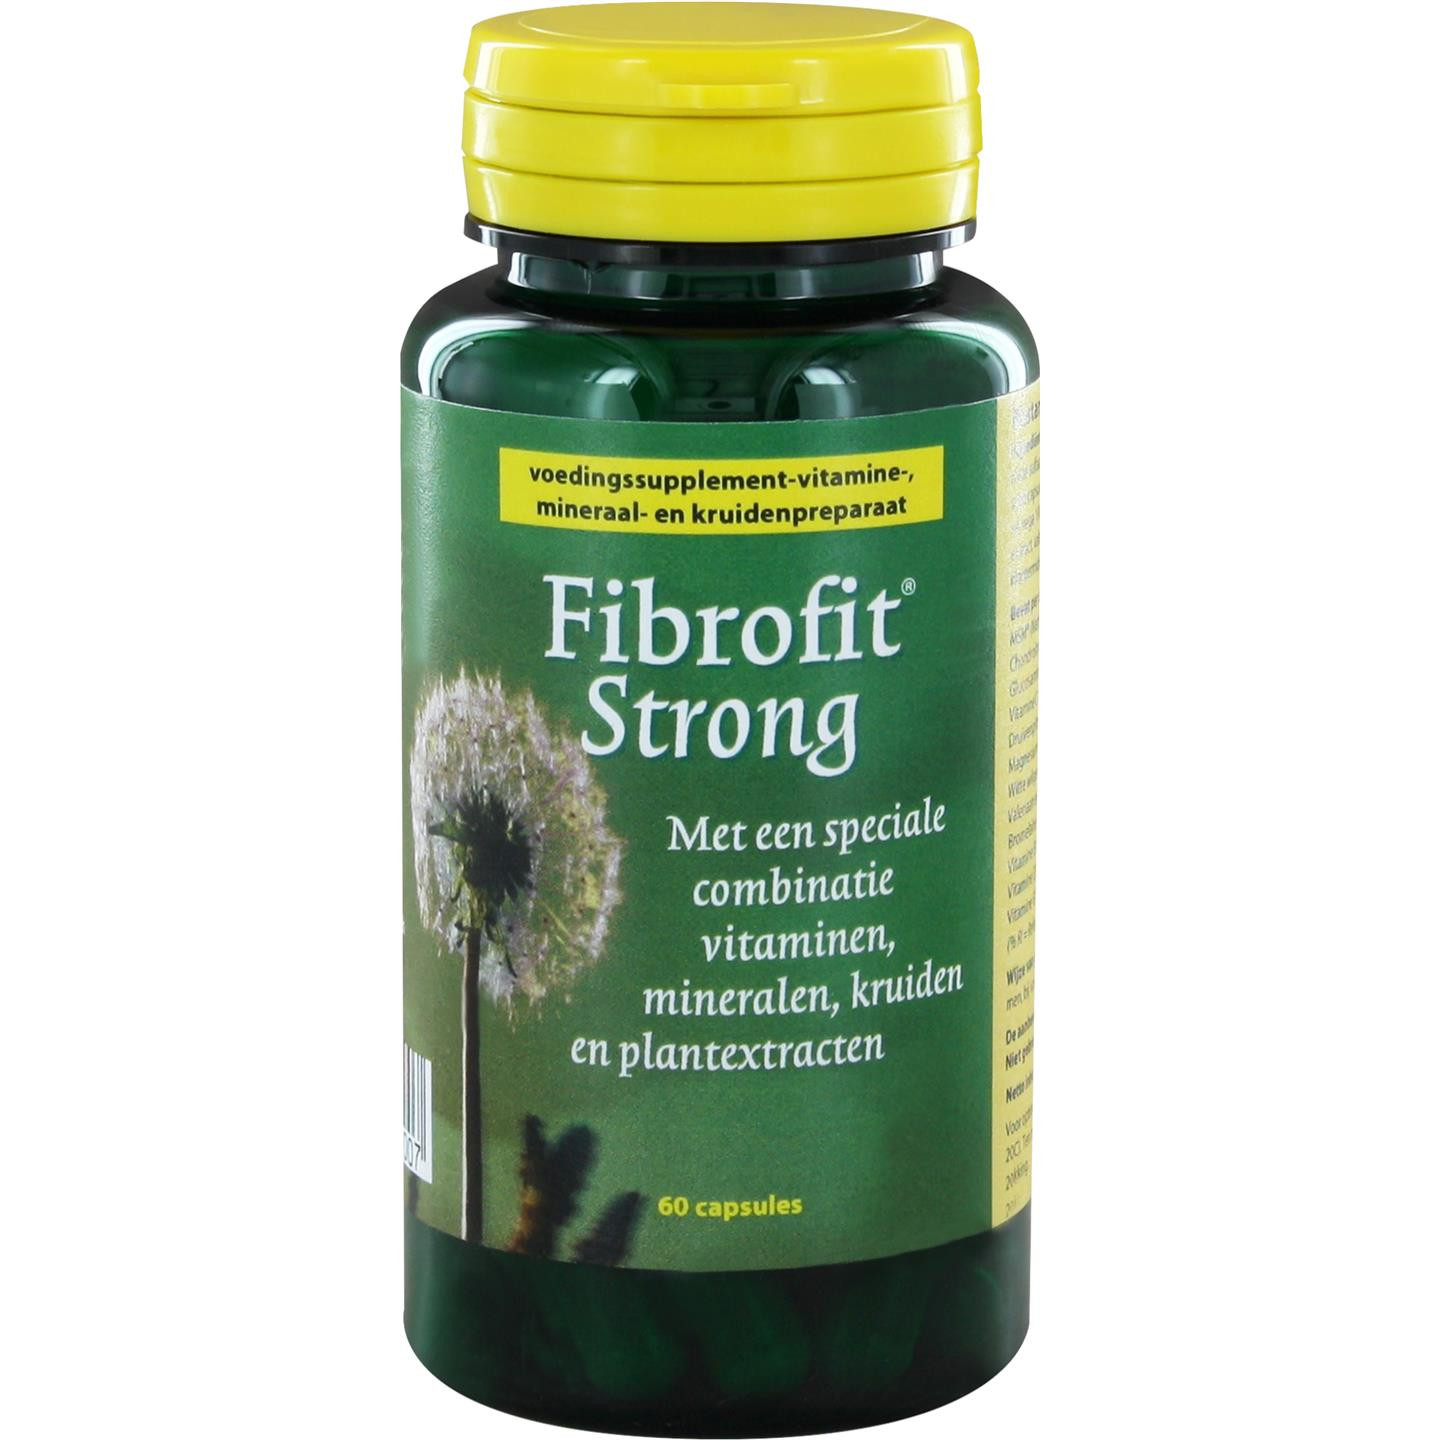 Fibrofit Strong